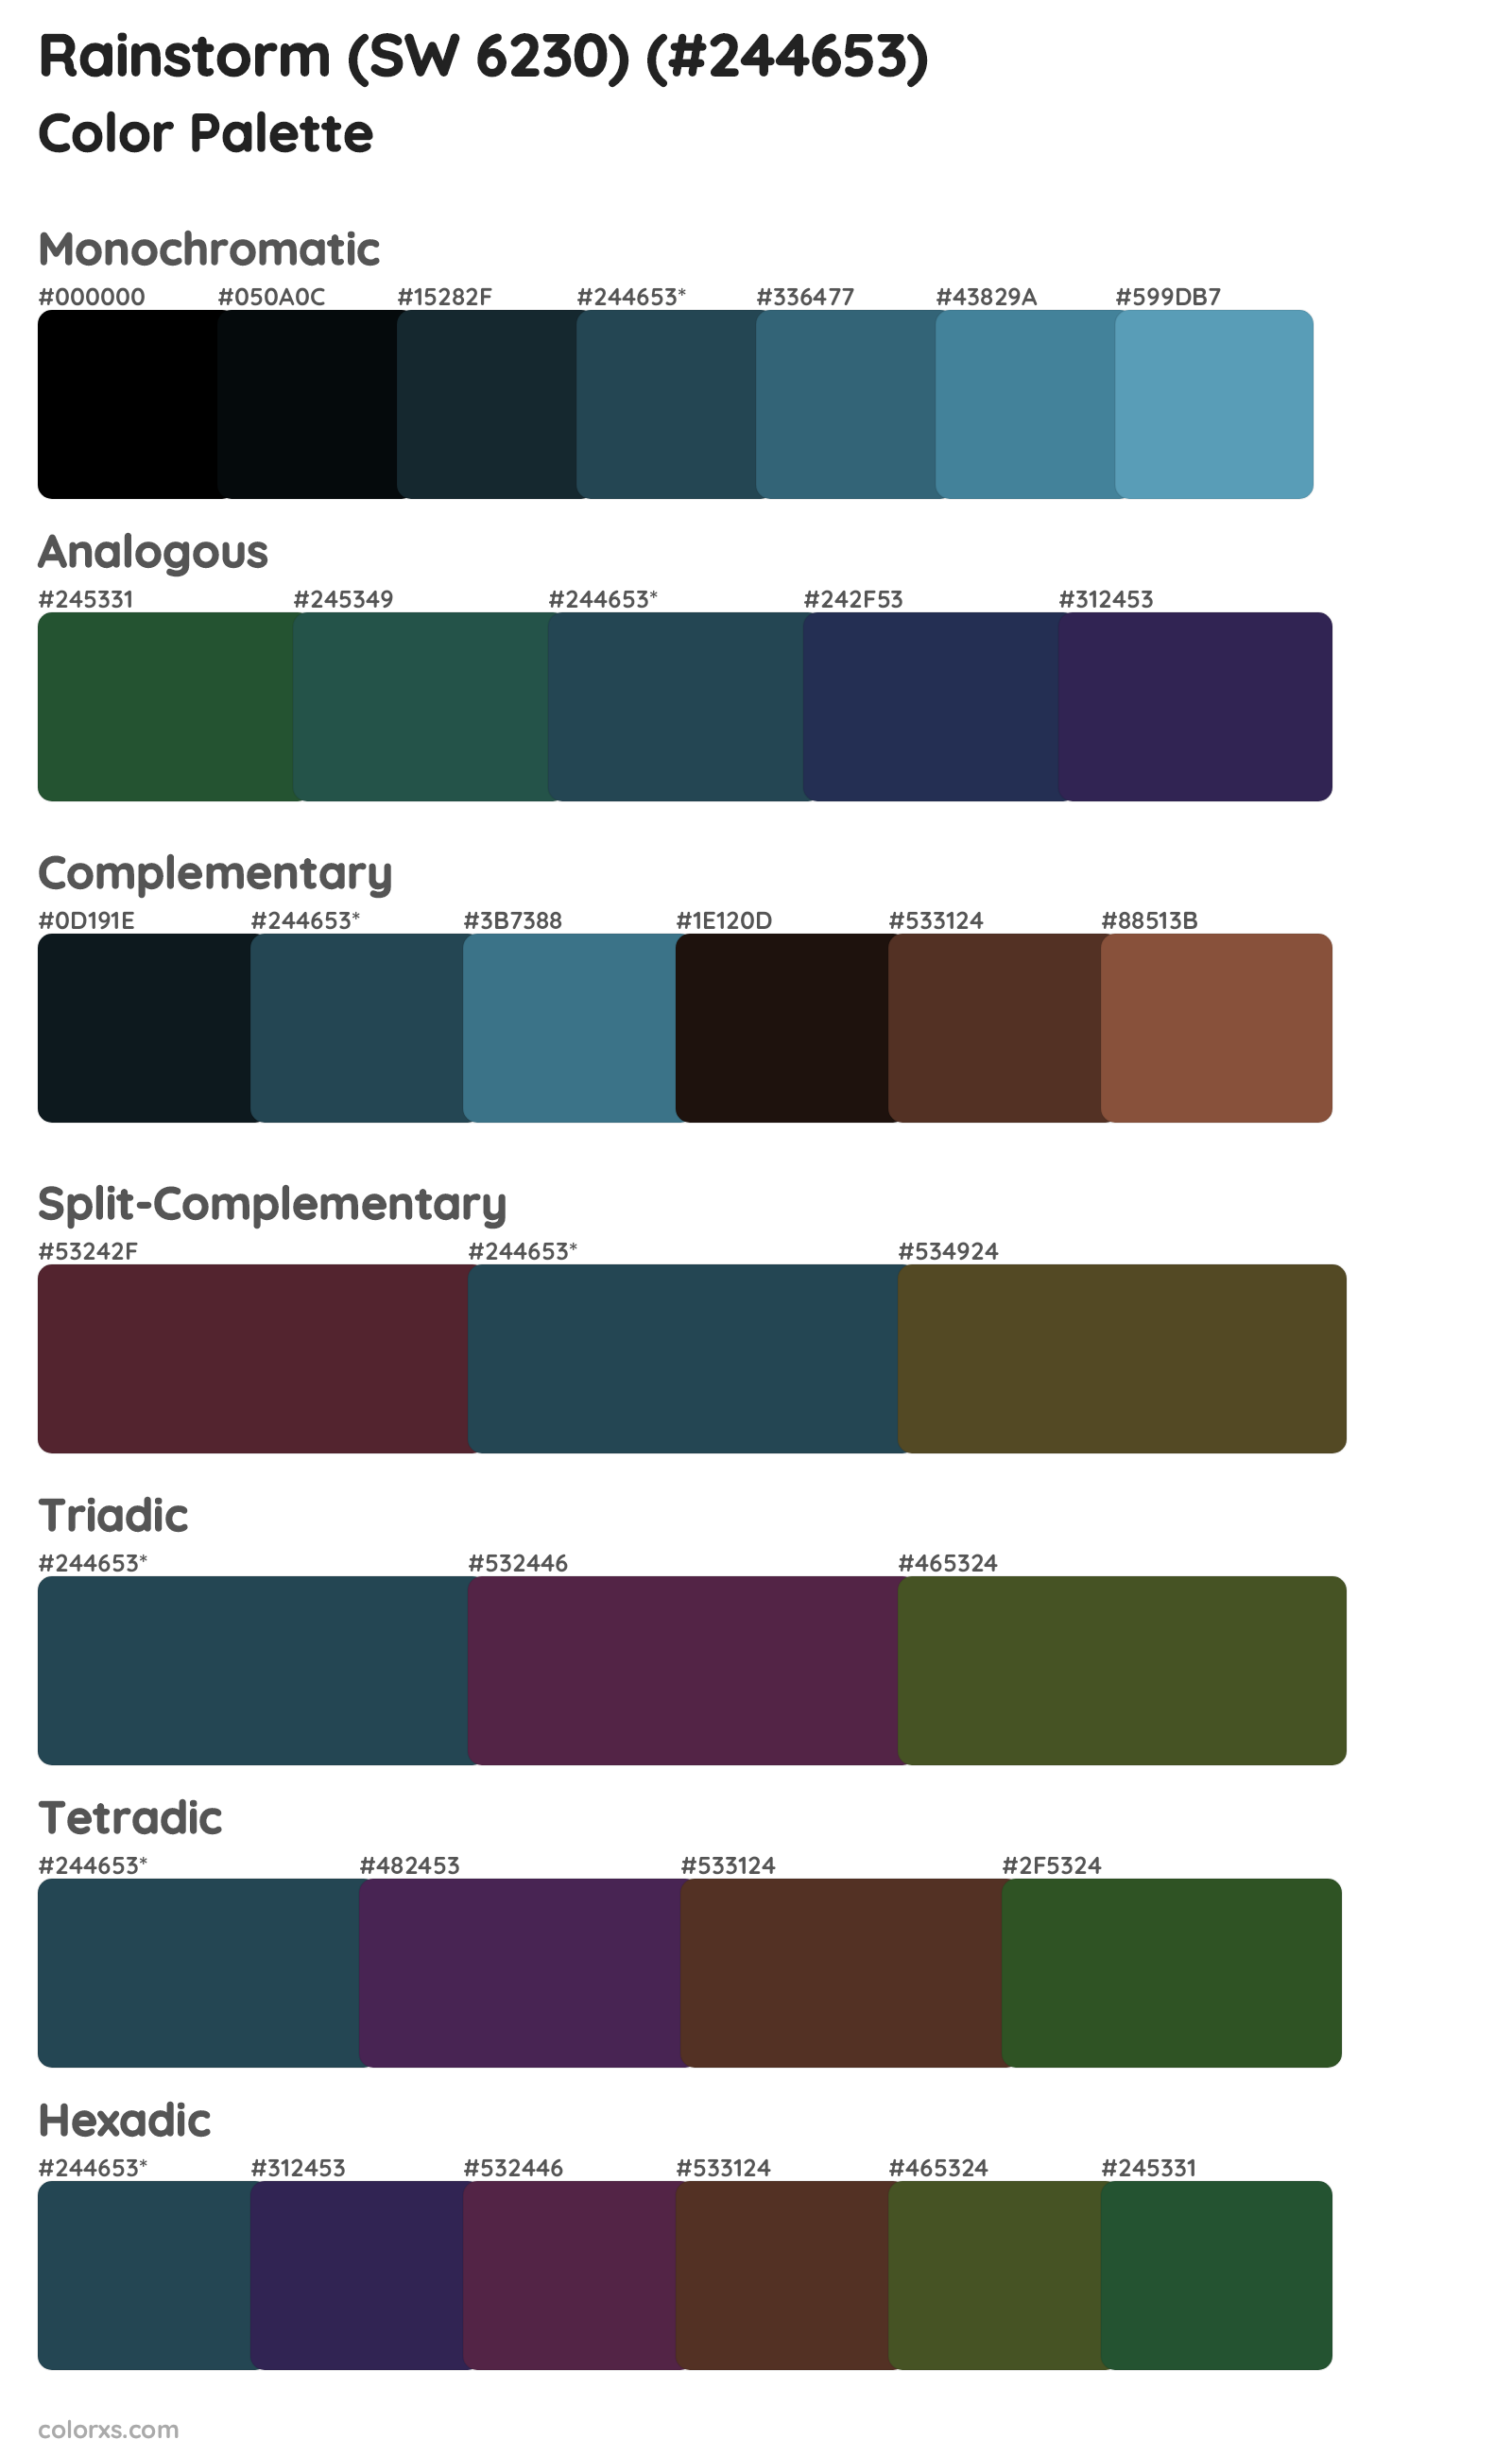 Rainstorm (SW 6230) Color Scheme Palettes